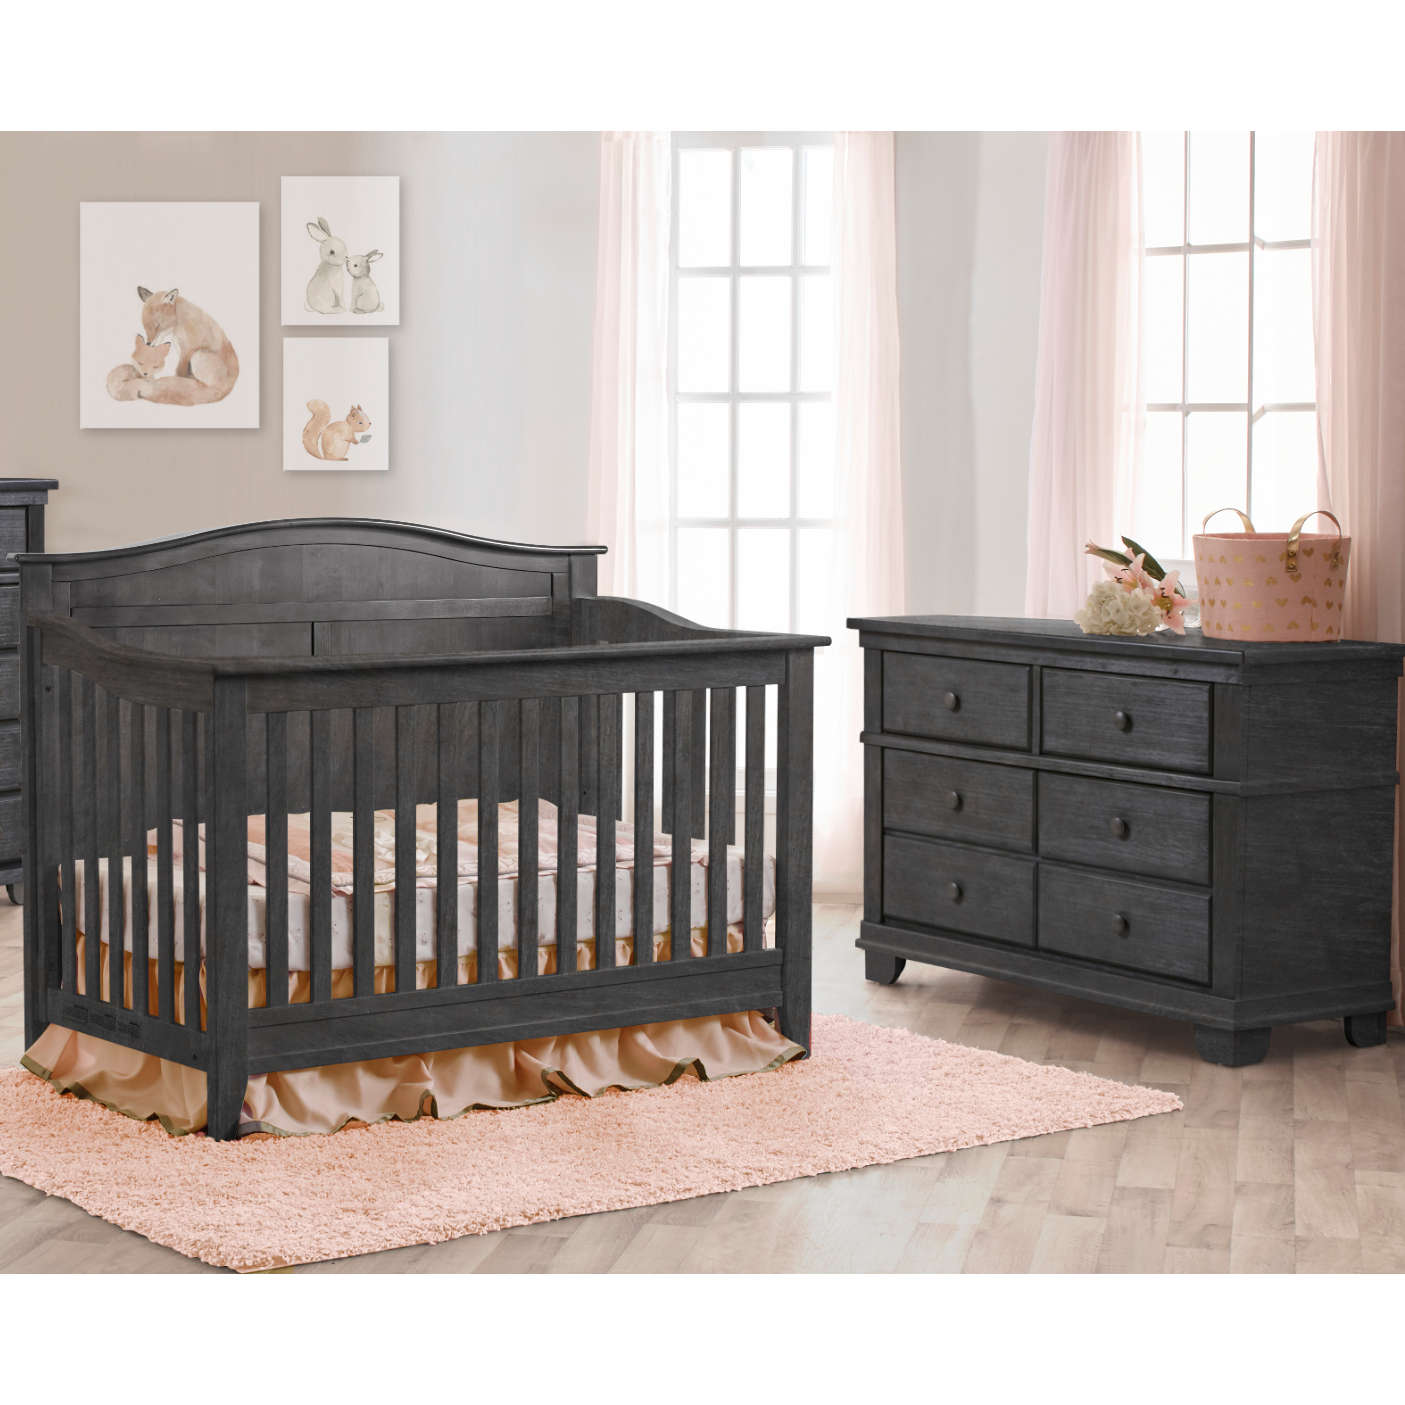 Pali Potenza Arch Top Crib + Double Dresser Set - Twinkle Twinkle Little One